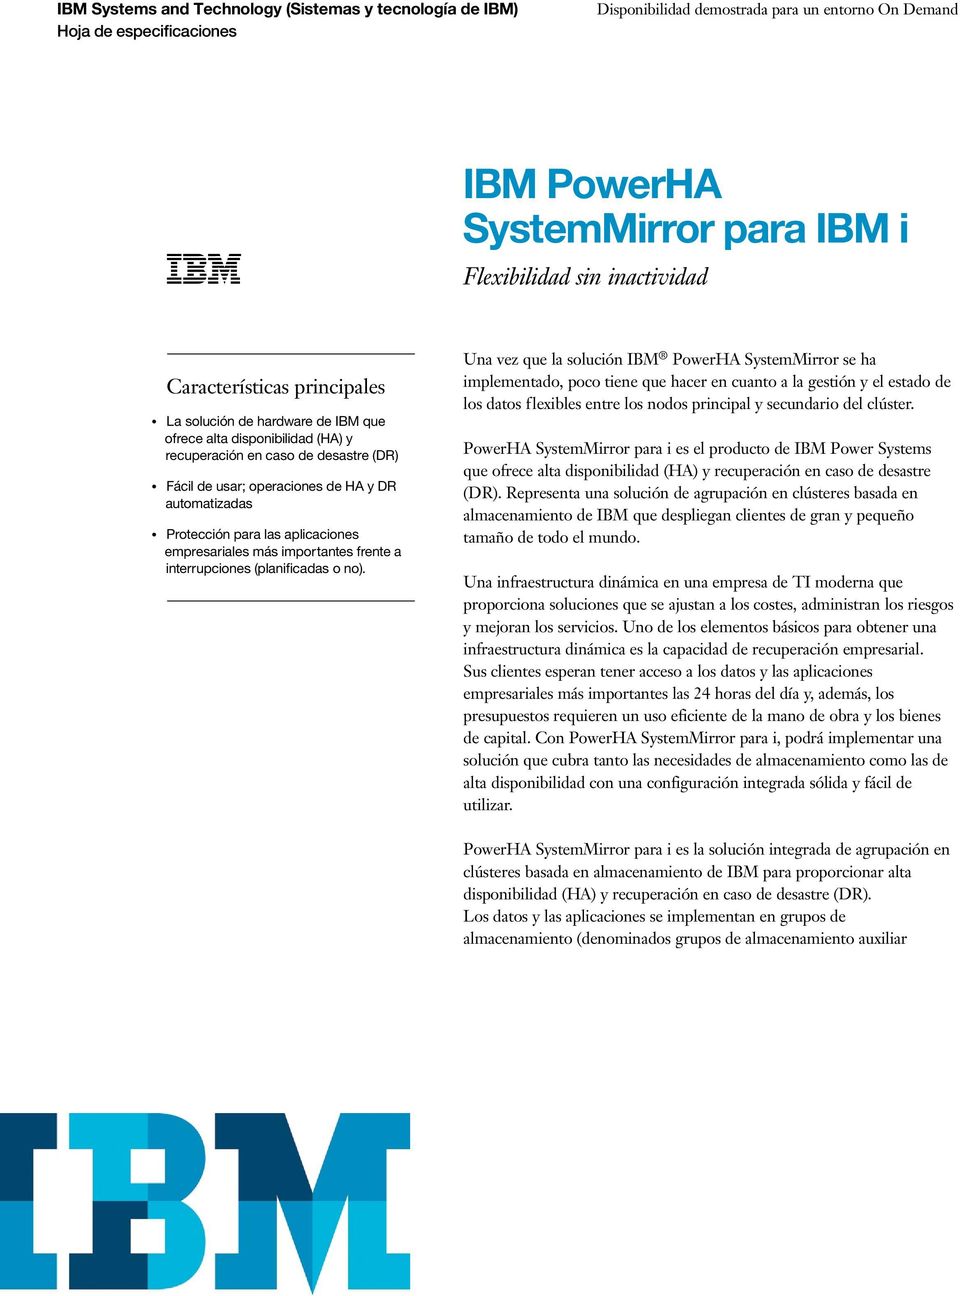 Una vez que la solución IBM PowerHA SystemMirror se ha implementado, poco tiene que hacer en cuanto a la gestión y el estado de los datos flexibles entre los nodos principal y secundario del clúster.